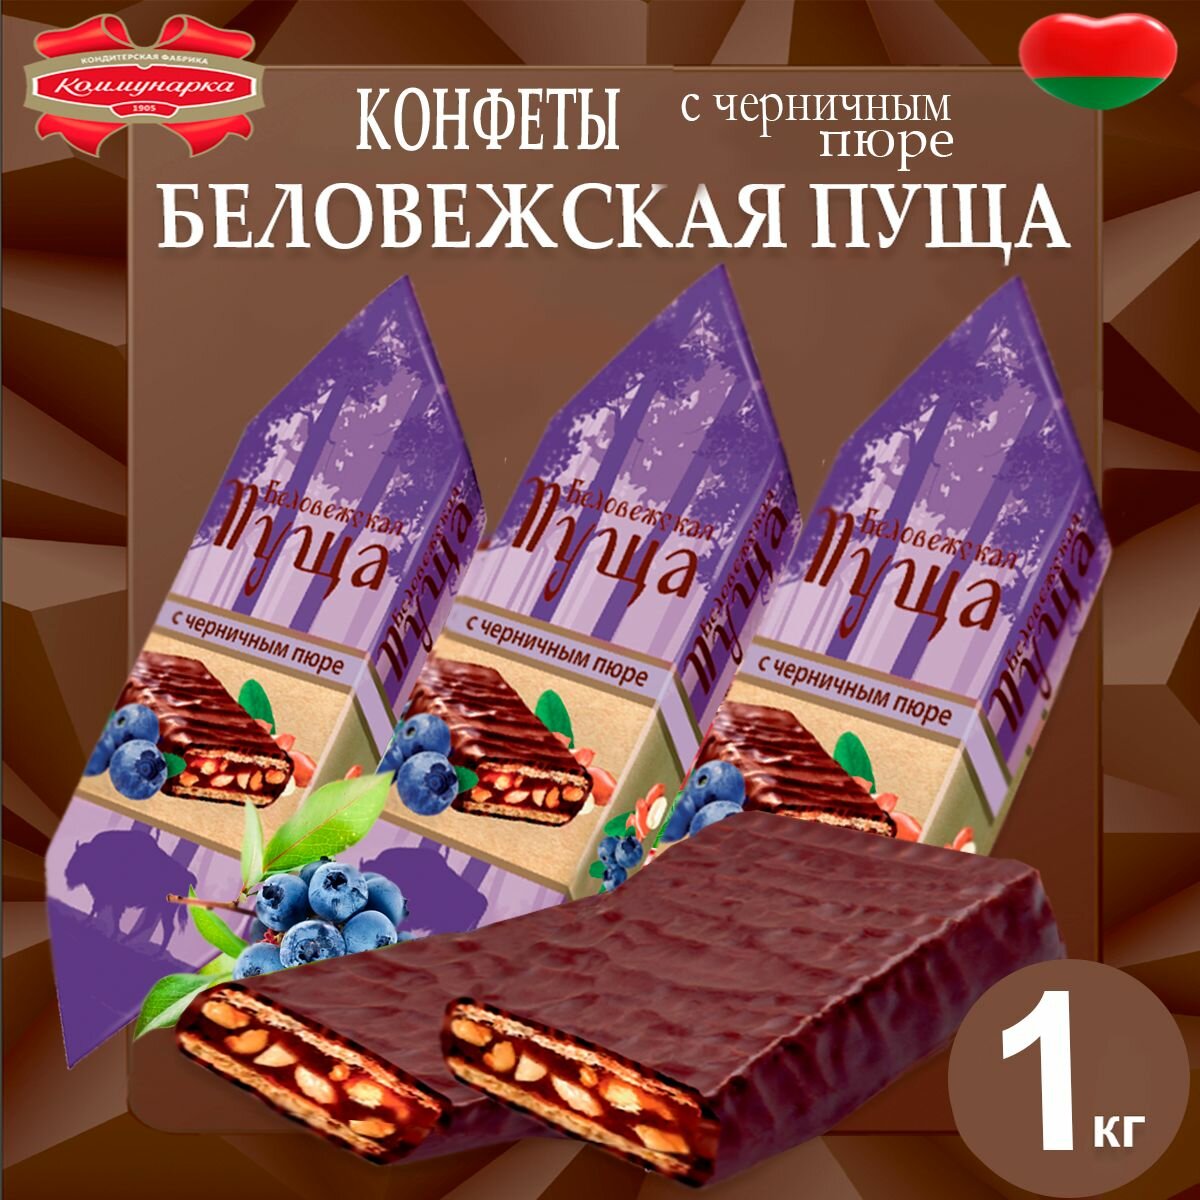 Конфеты Беловежская пуща с черничным пюре, 1020гр